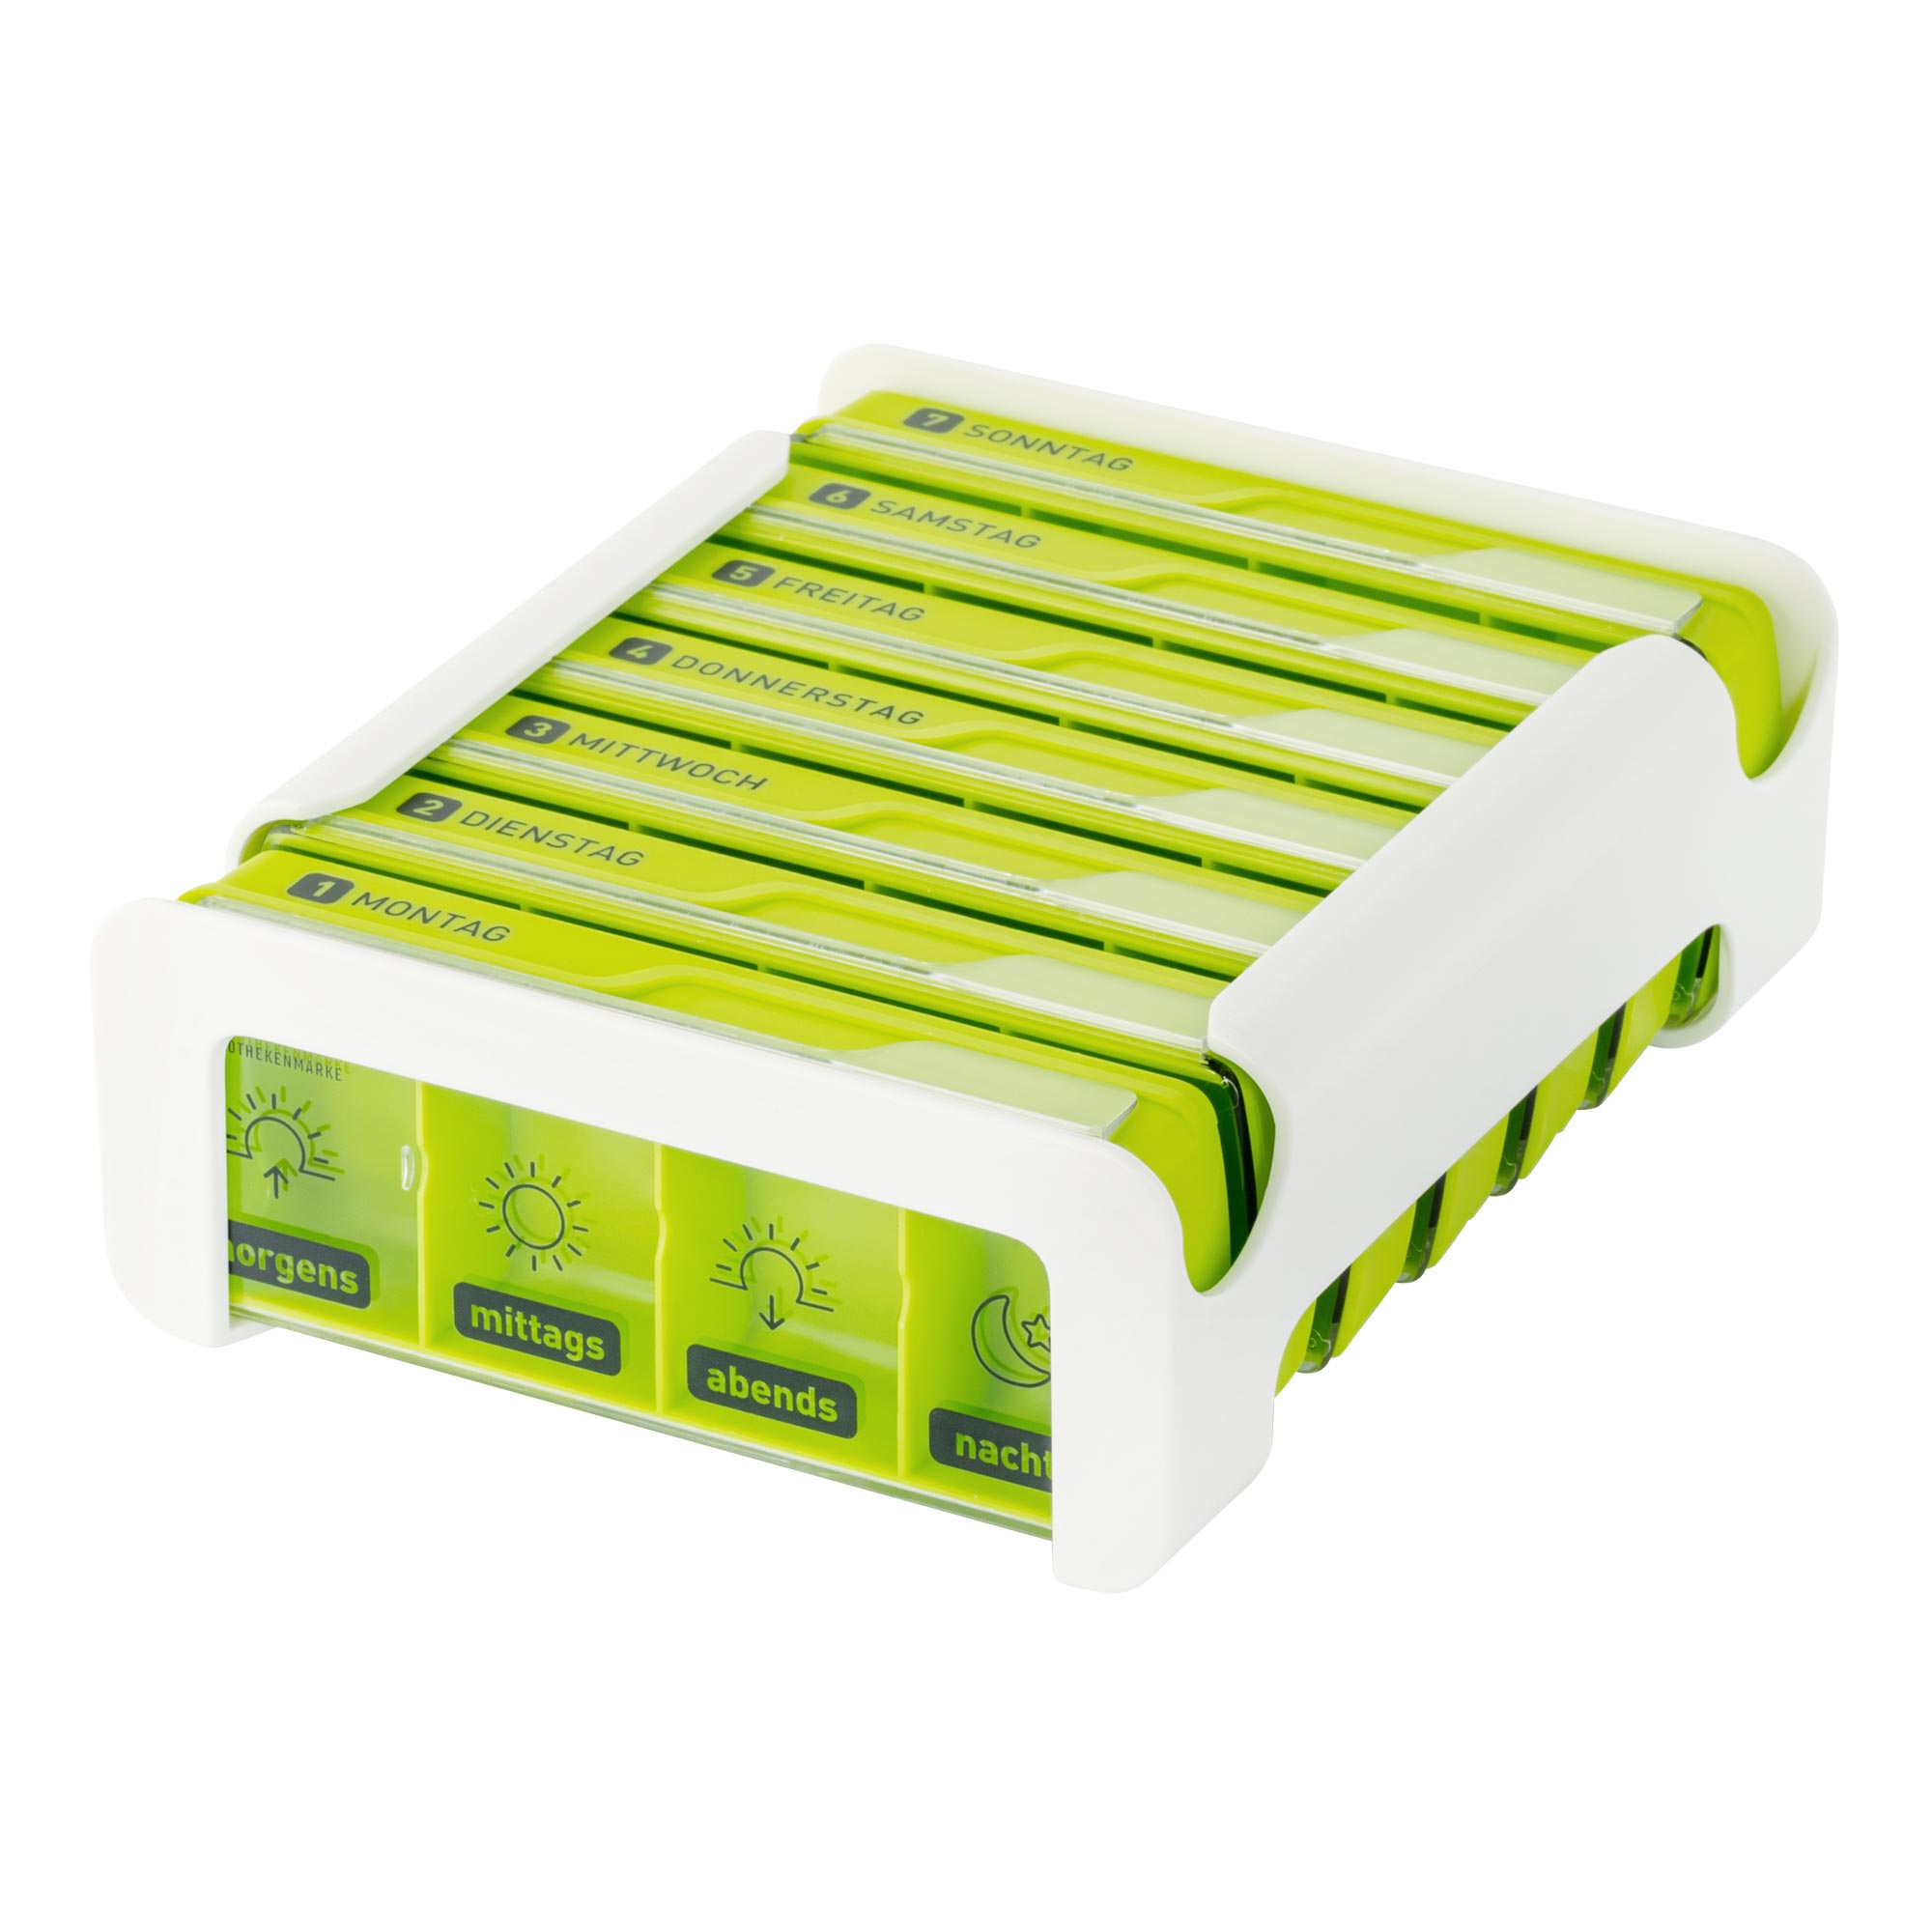 Wepa 7 Tage Compact Wochenbox in weiß/grün